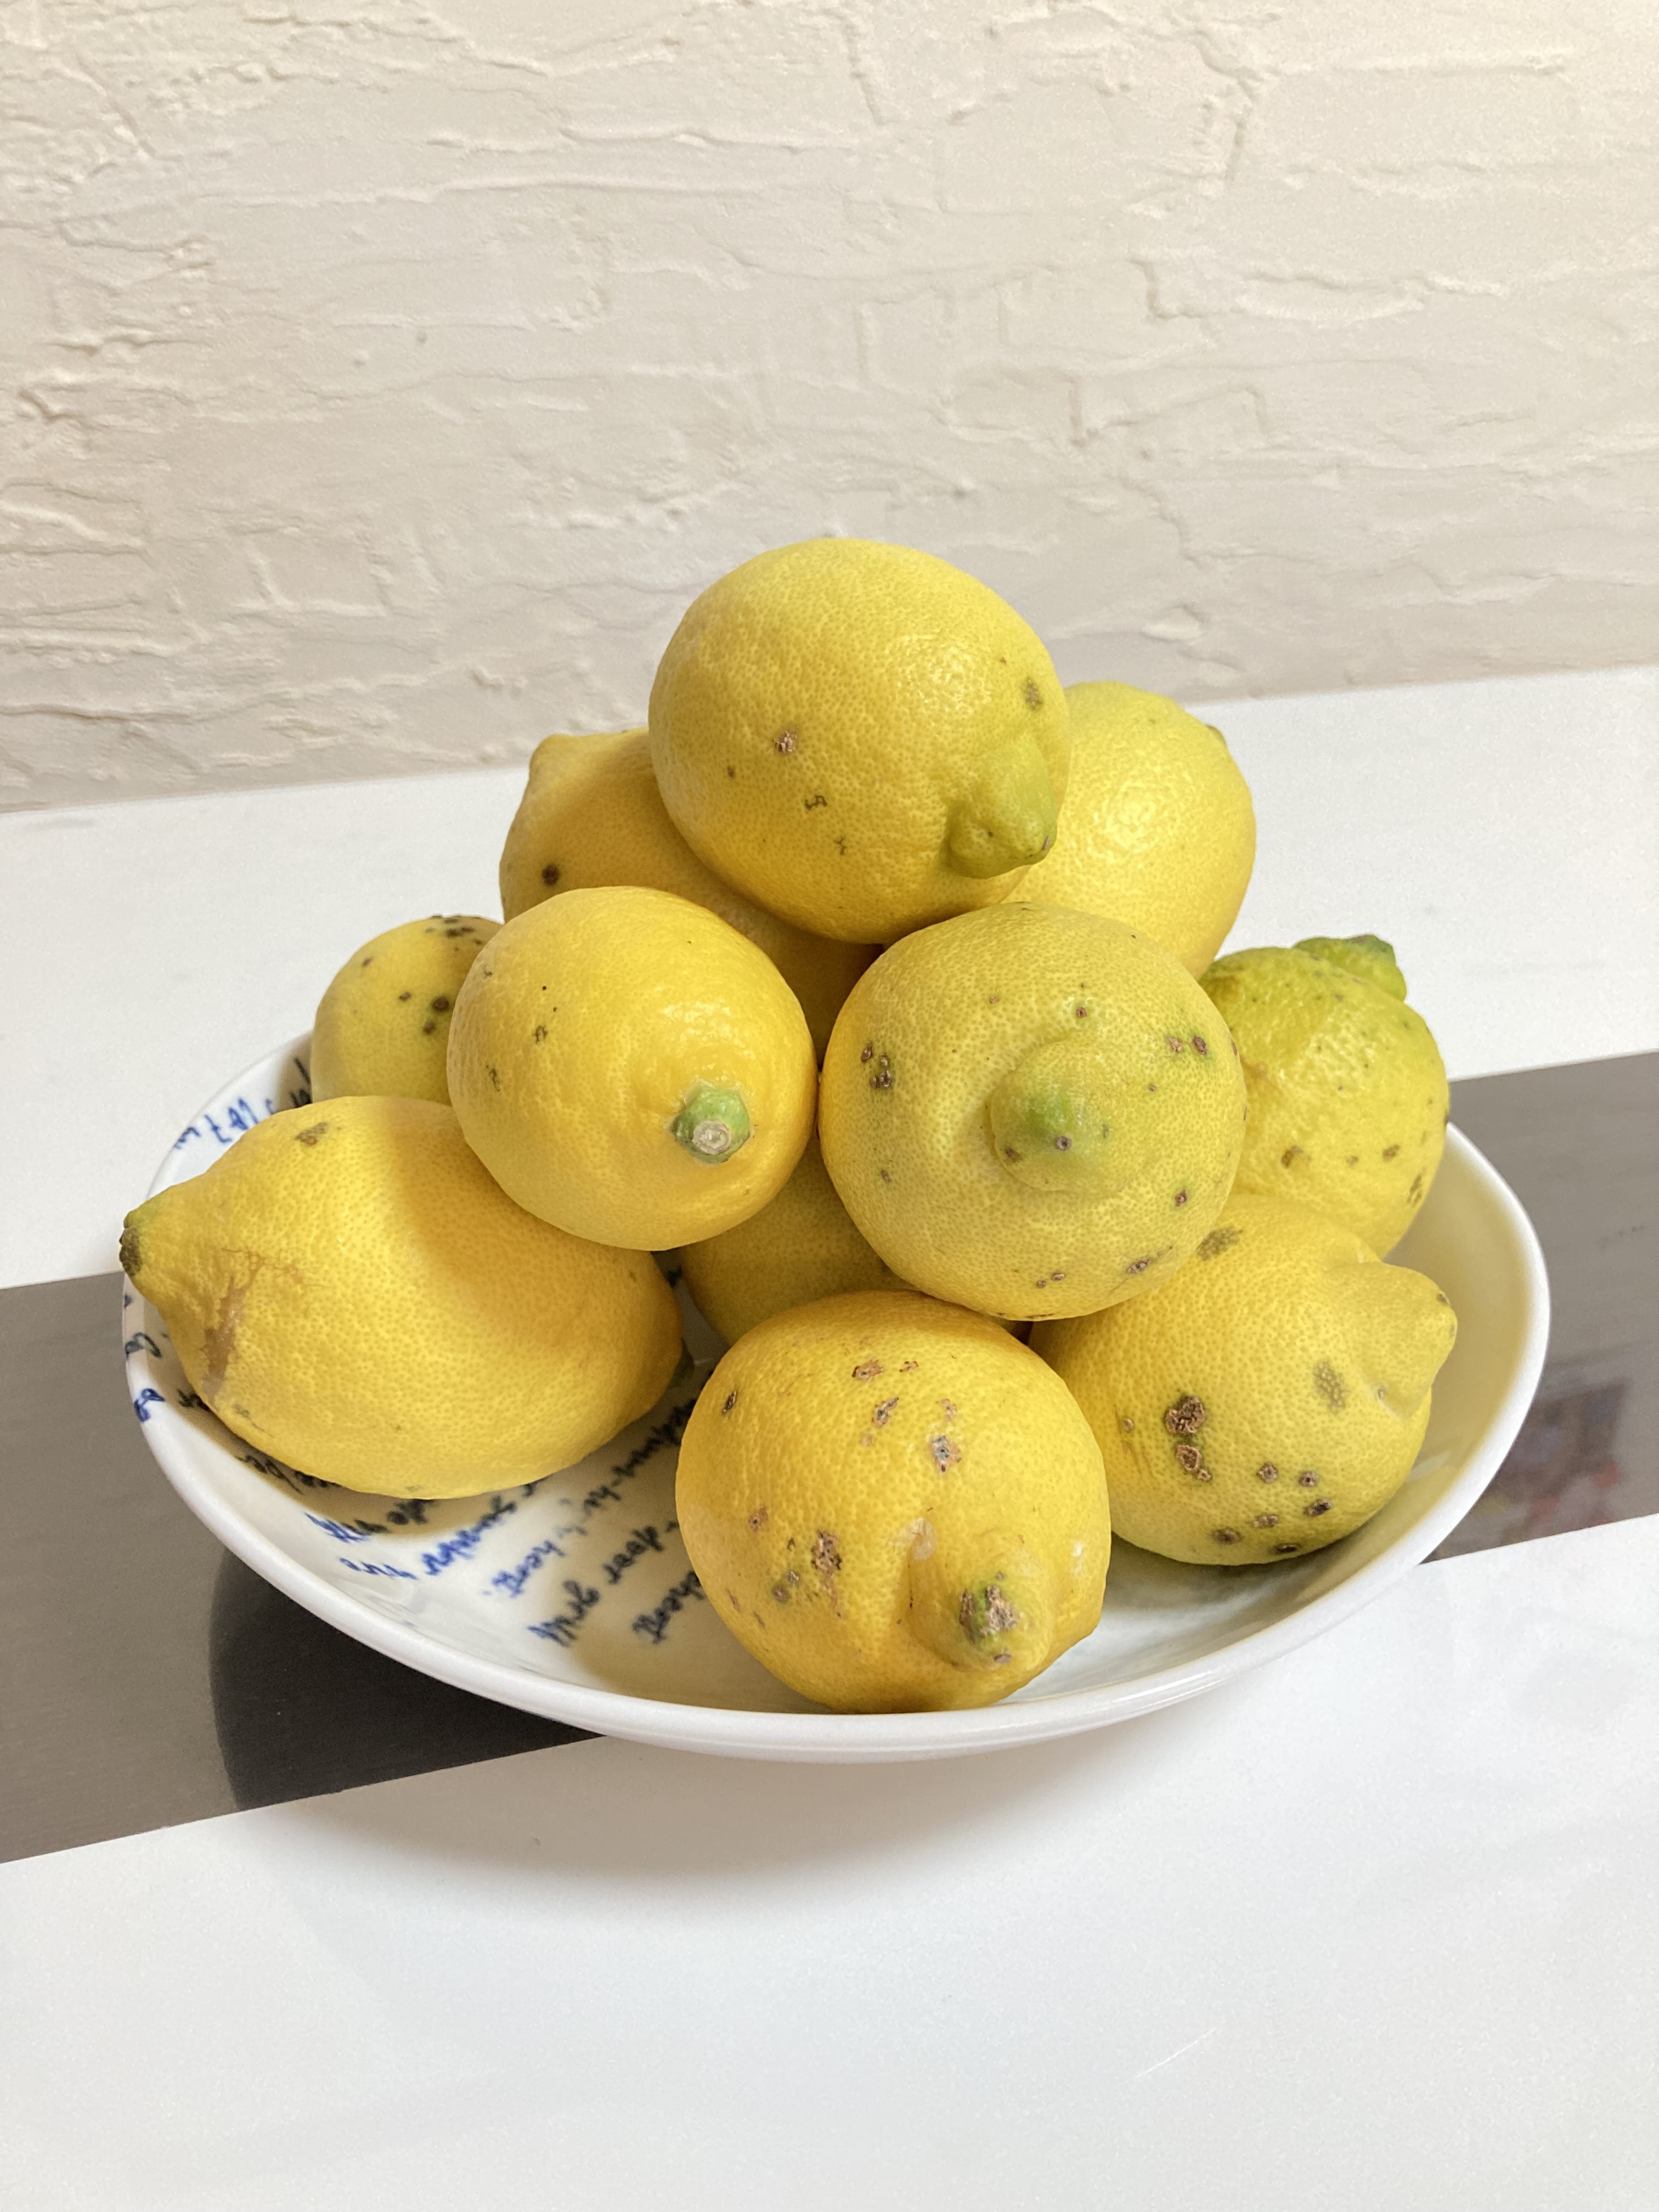 国産レモン訳あり品(県指定特別栽培、10月中旬以降は黄色く色づいてきます) | 農家漁師から産地直送の通販 ポケットマルシェ